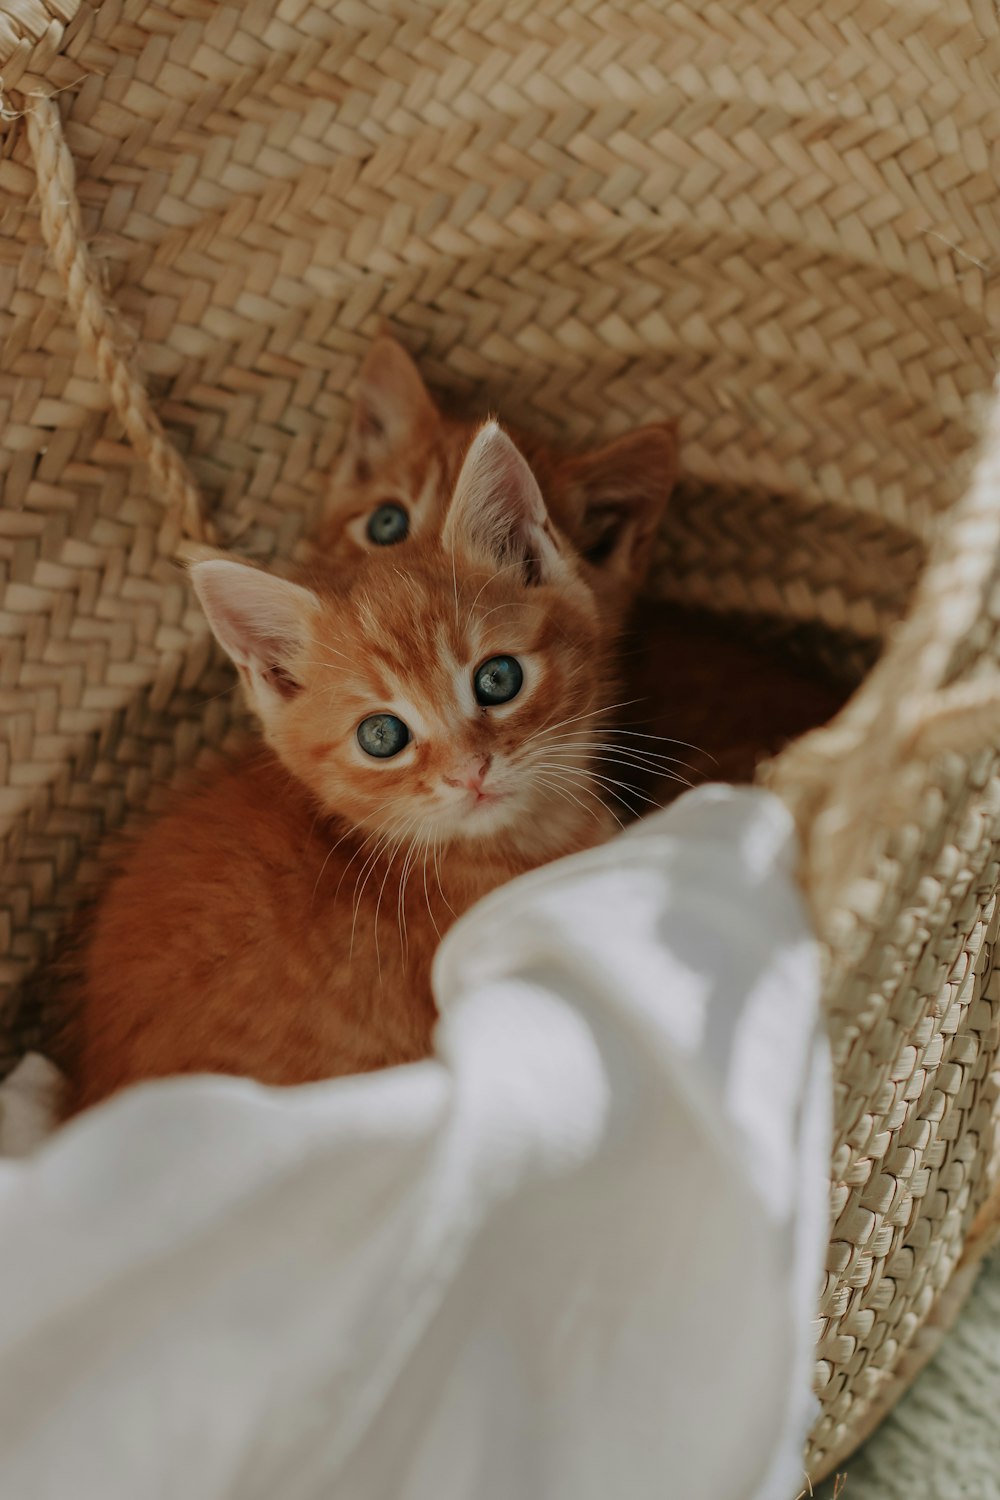 a cat sitting in a basket